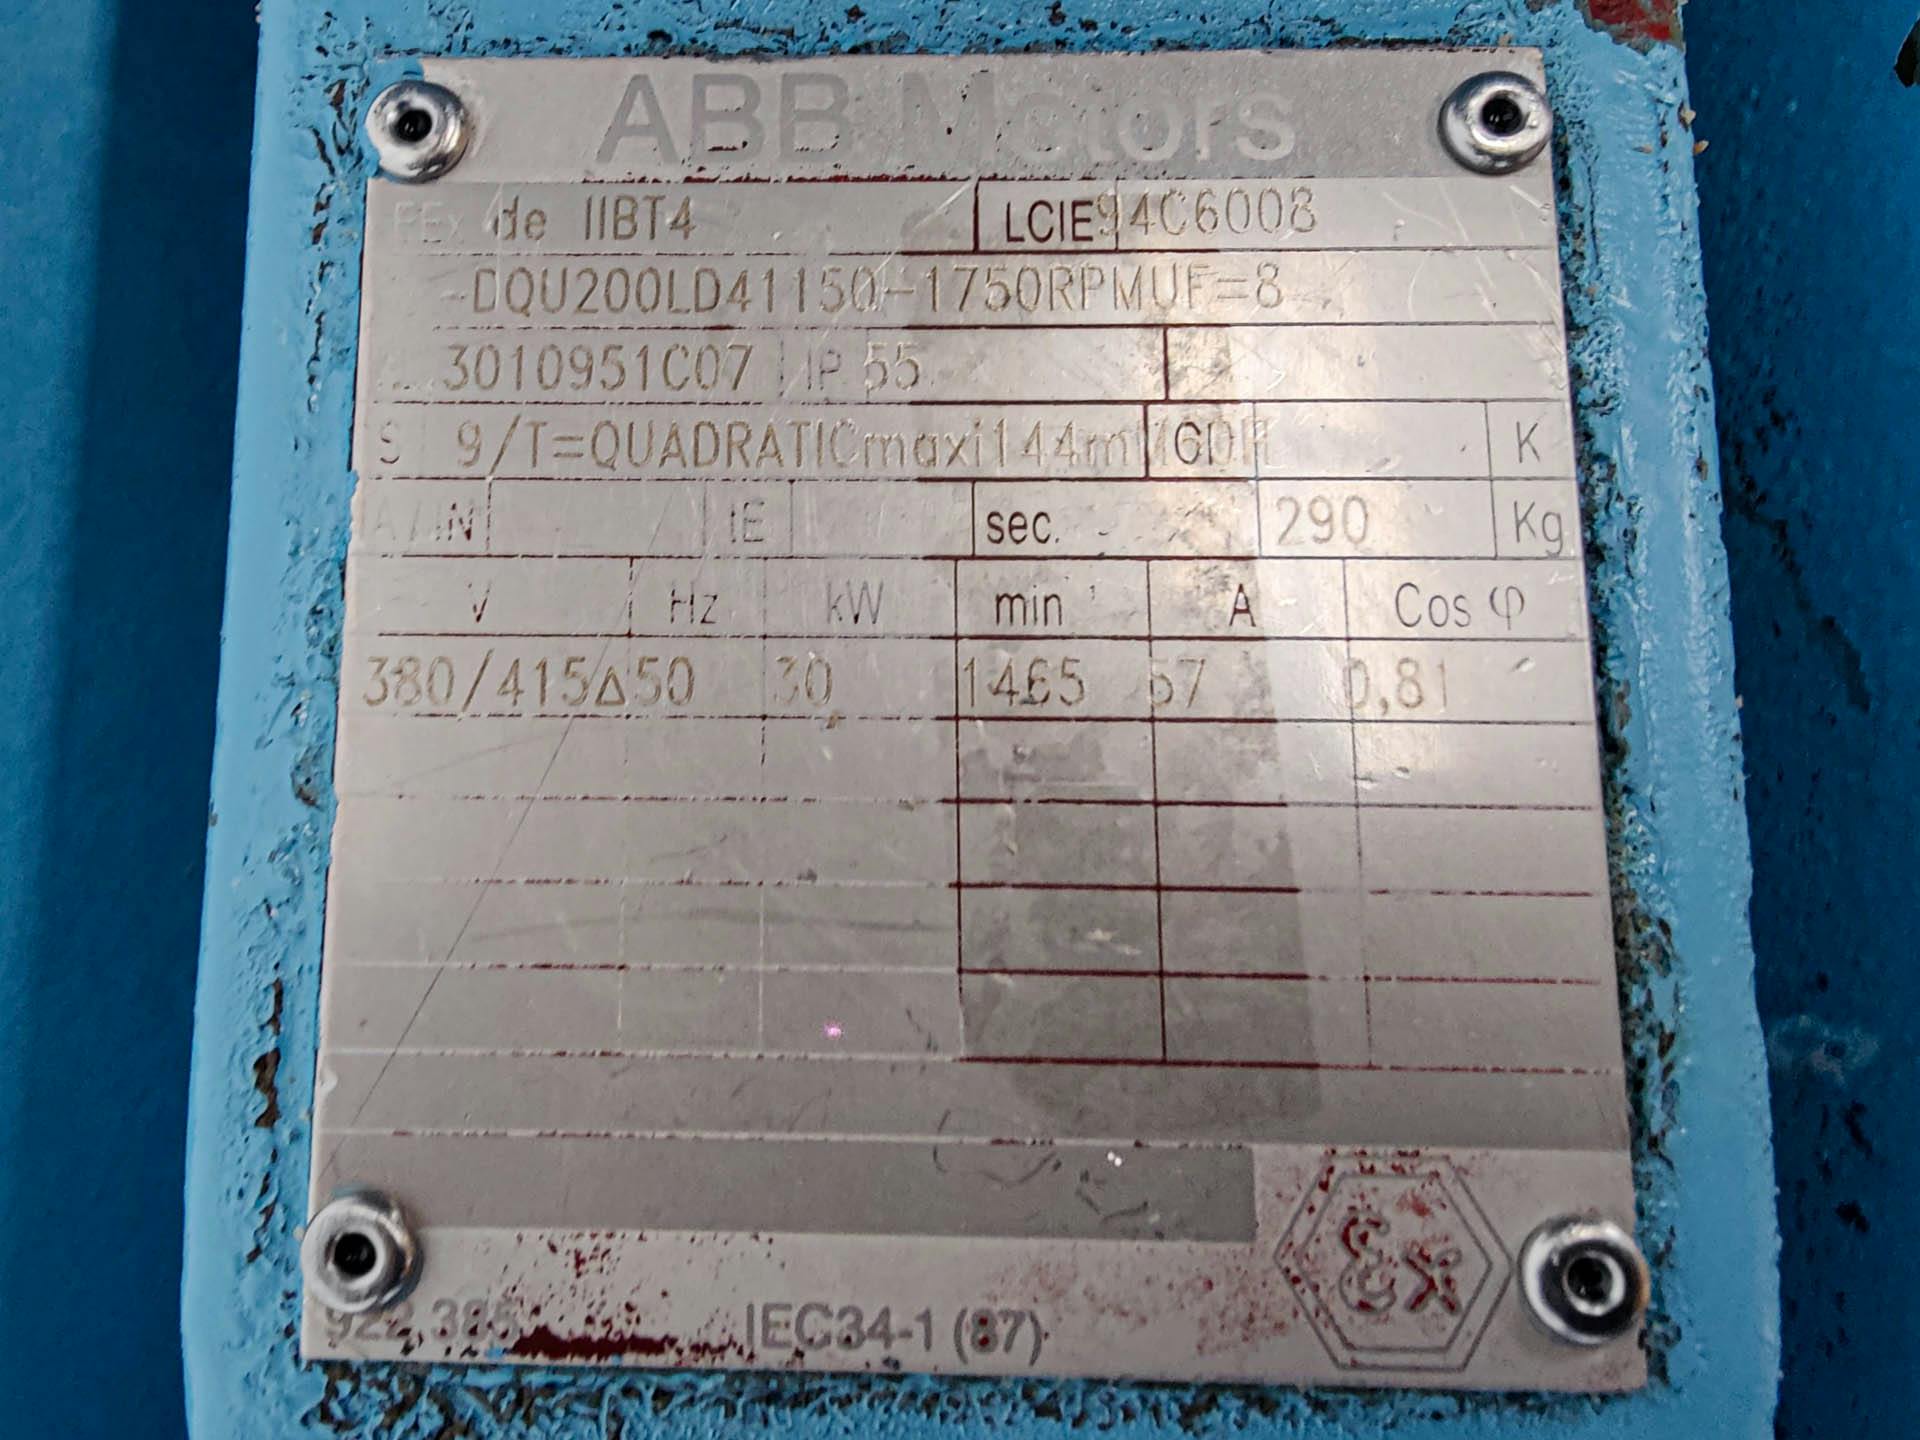 APV Rosista W-25/200-380 - Pompa centrifuga - image 5